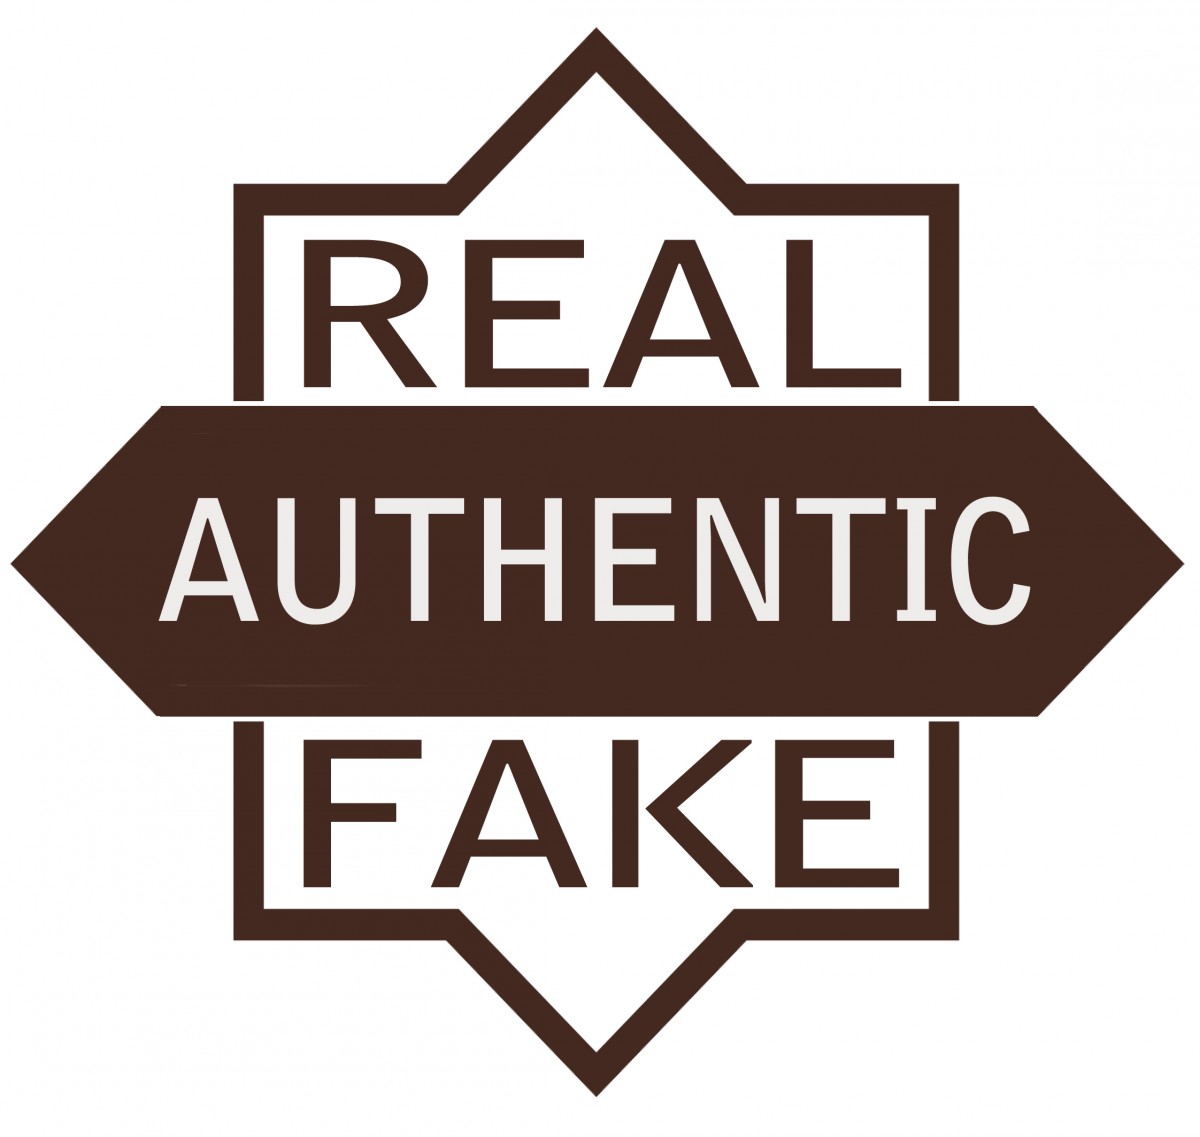 Authentic là gì? Nhận biết các loại hàng hóa trên thị trường và phân biệt thật giả như chuyên gia 